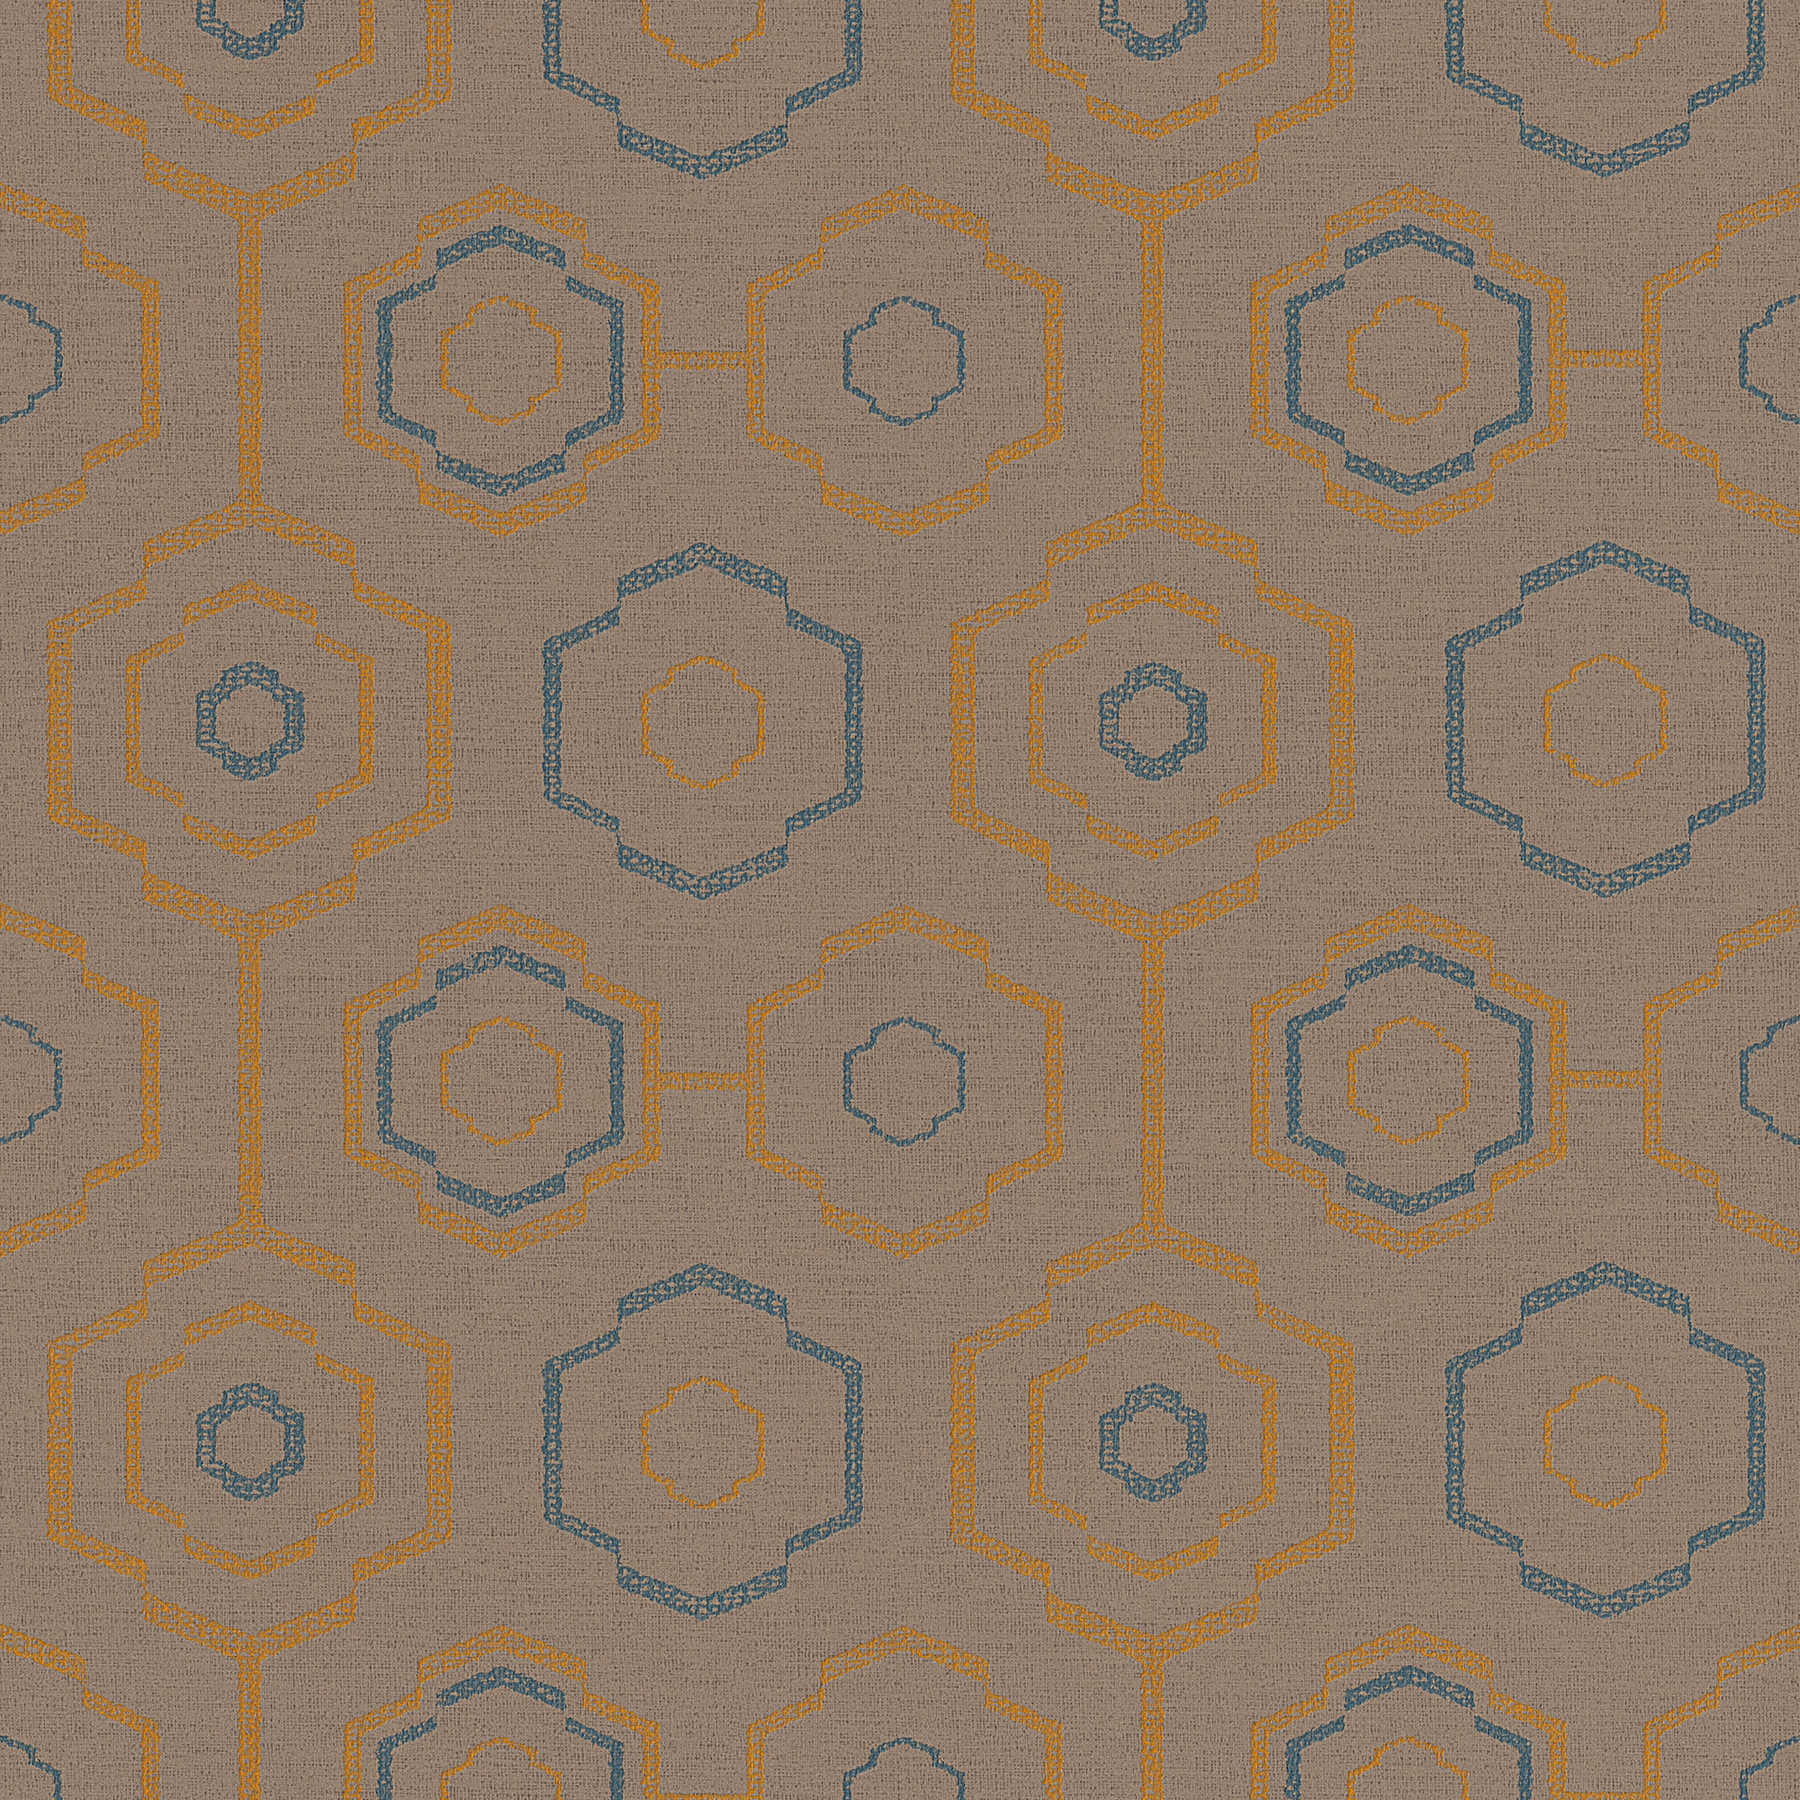 Behang inheems textielpatroon met geometrisch ontwerp - Bruin, Blauw, Oranje
